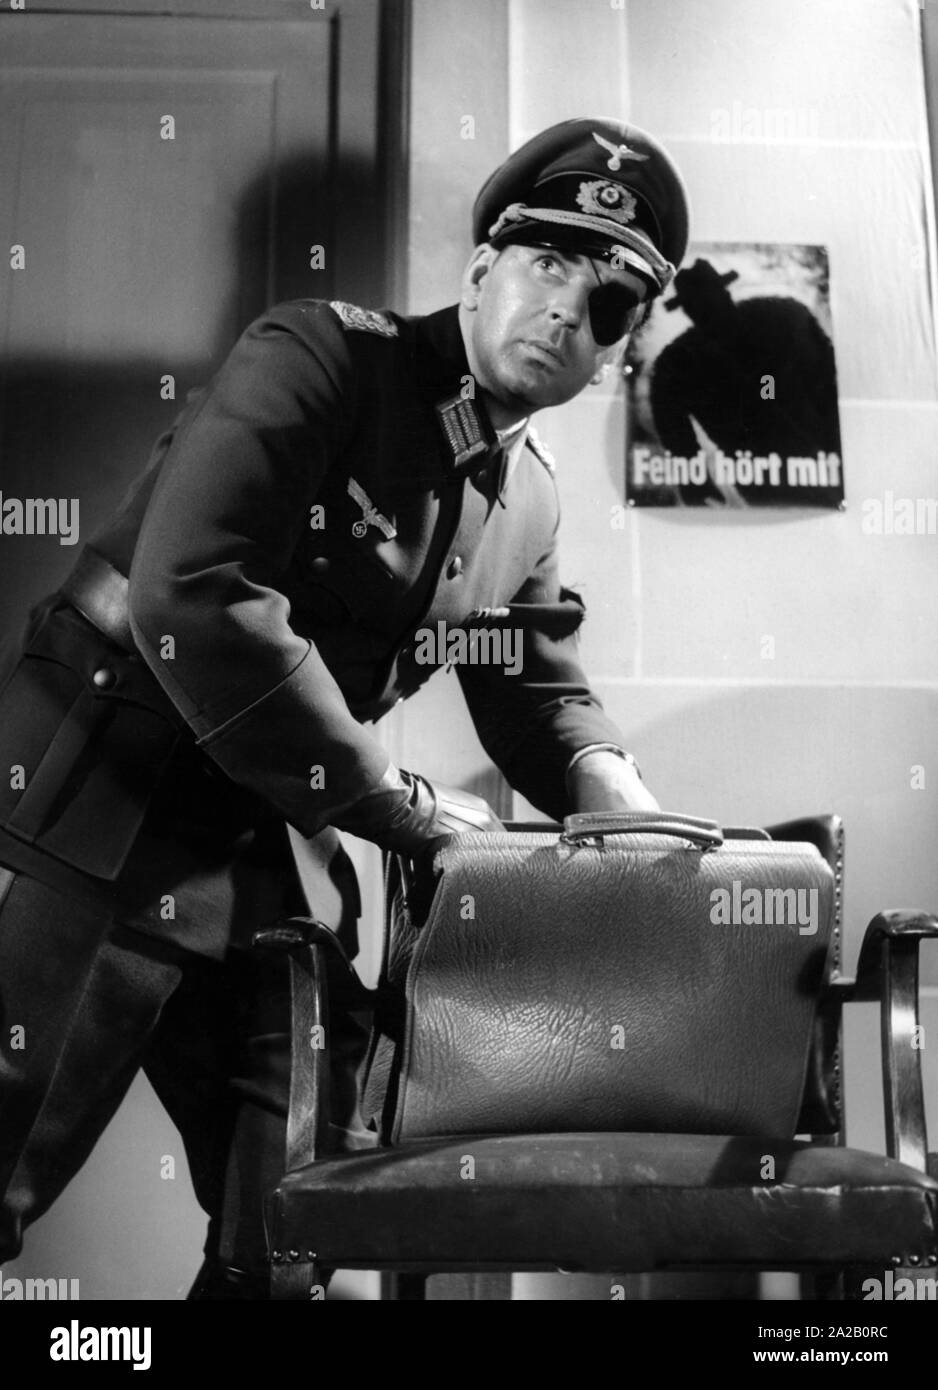 Szene aus dem Film "Es geschah am 20. Juli" durch Georg Wilhelm Pabst, wurde der Film erstmals am 19. Juni 1955. Claus Schenk Graf von Stauffenberg wurde von Bernhard Wicki verkörpert. Stockfoto